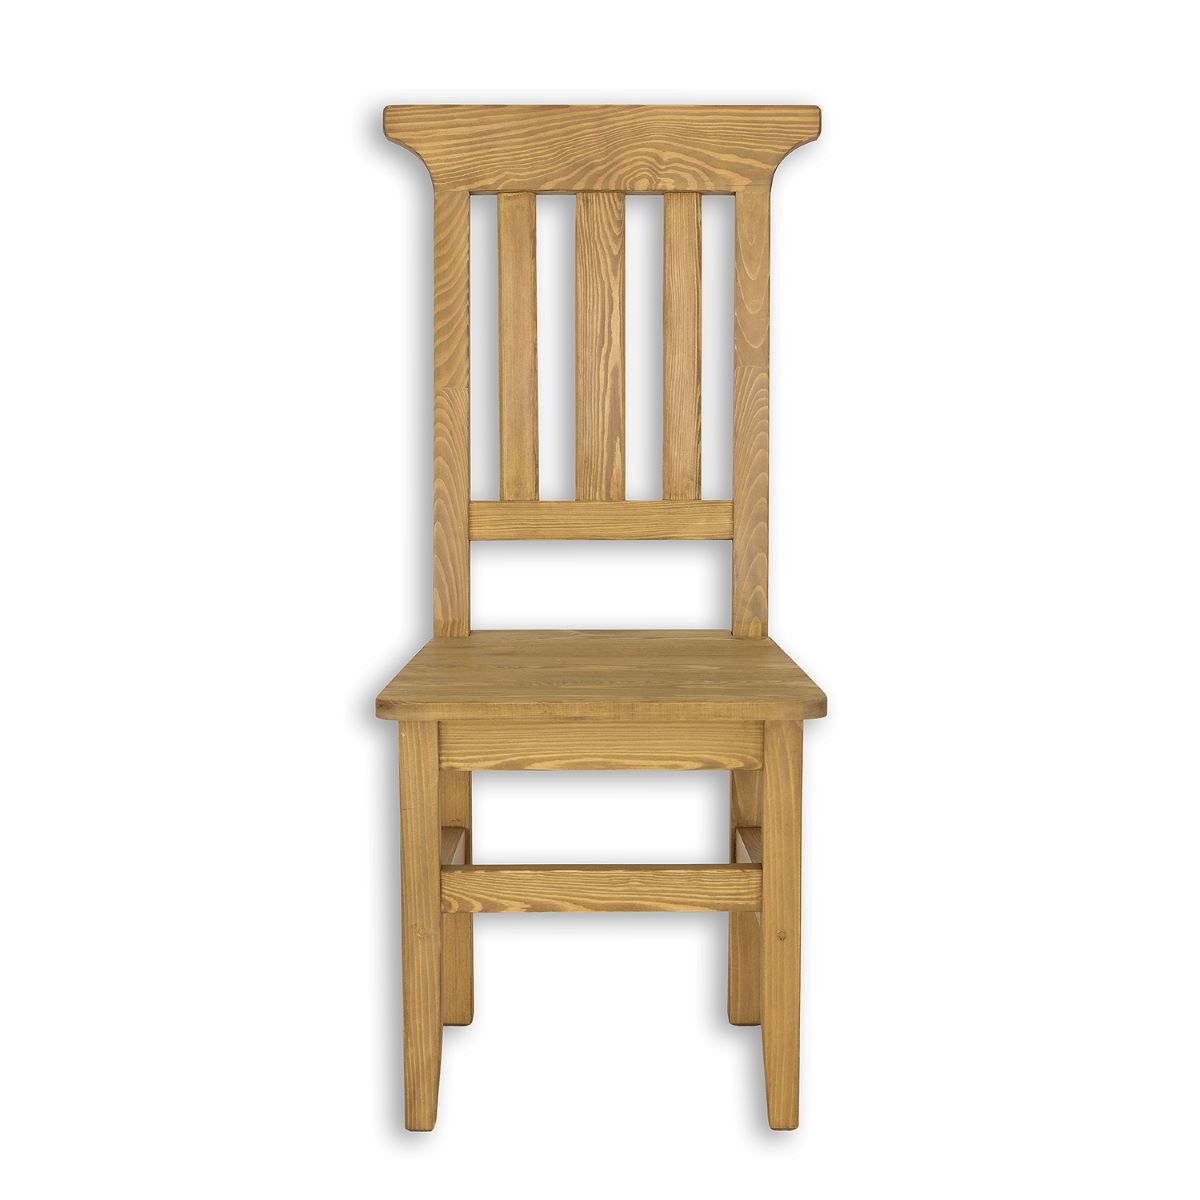 Rustik stolička KT704, jasný vosk